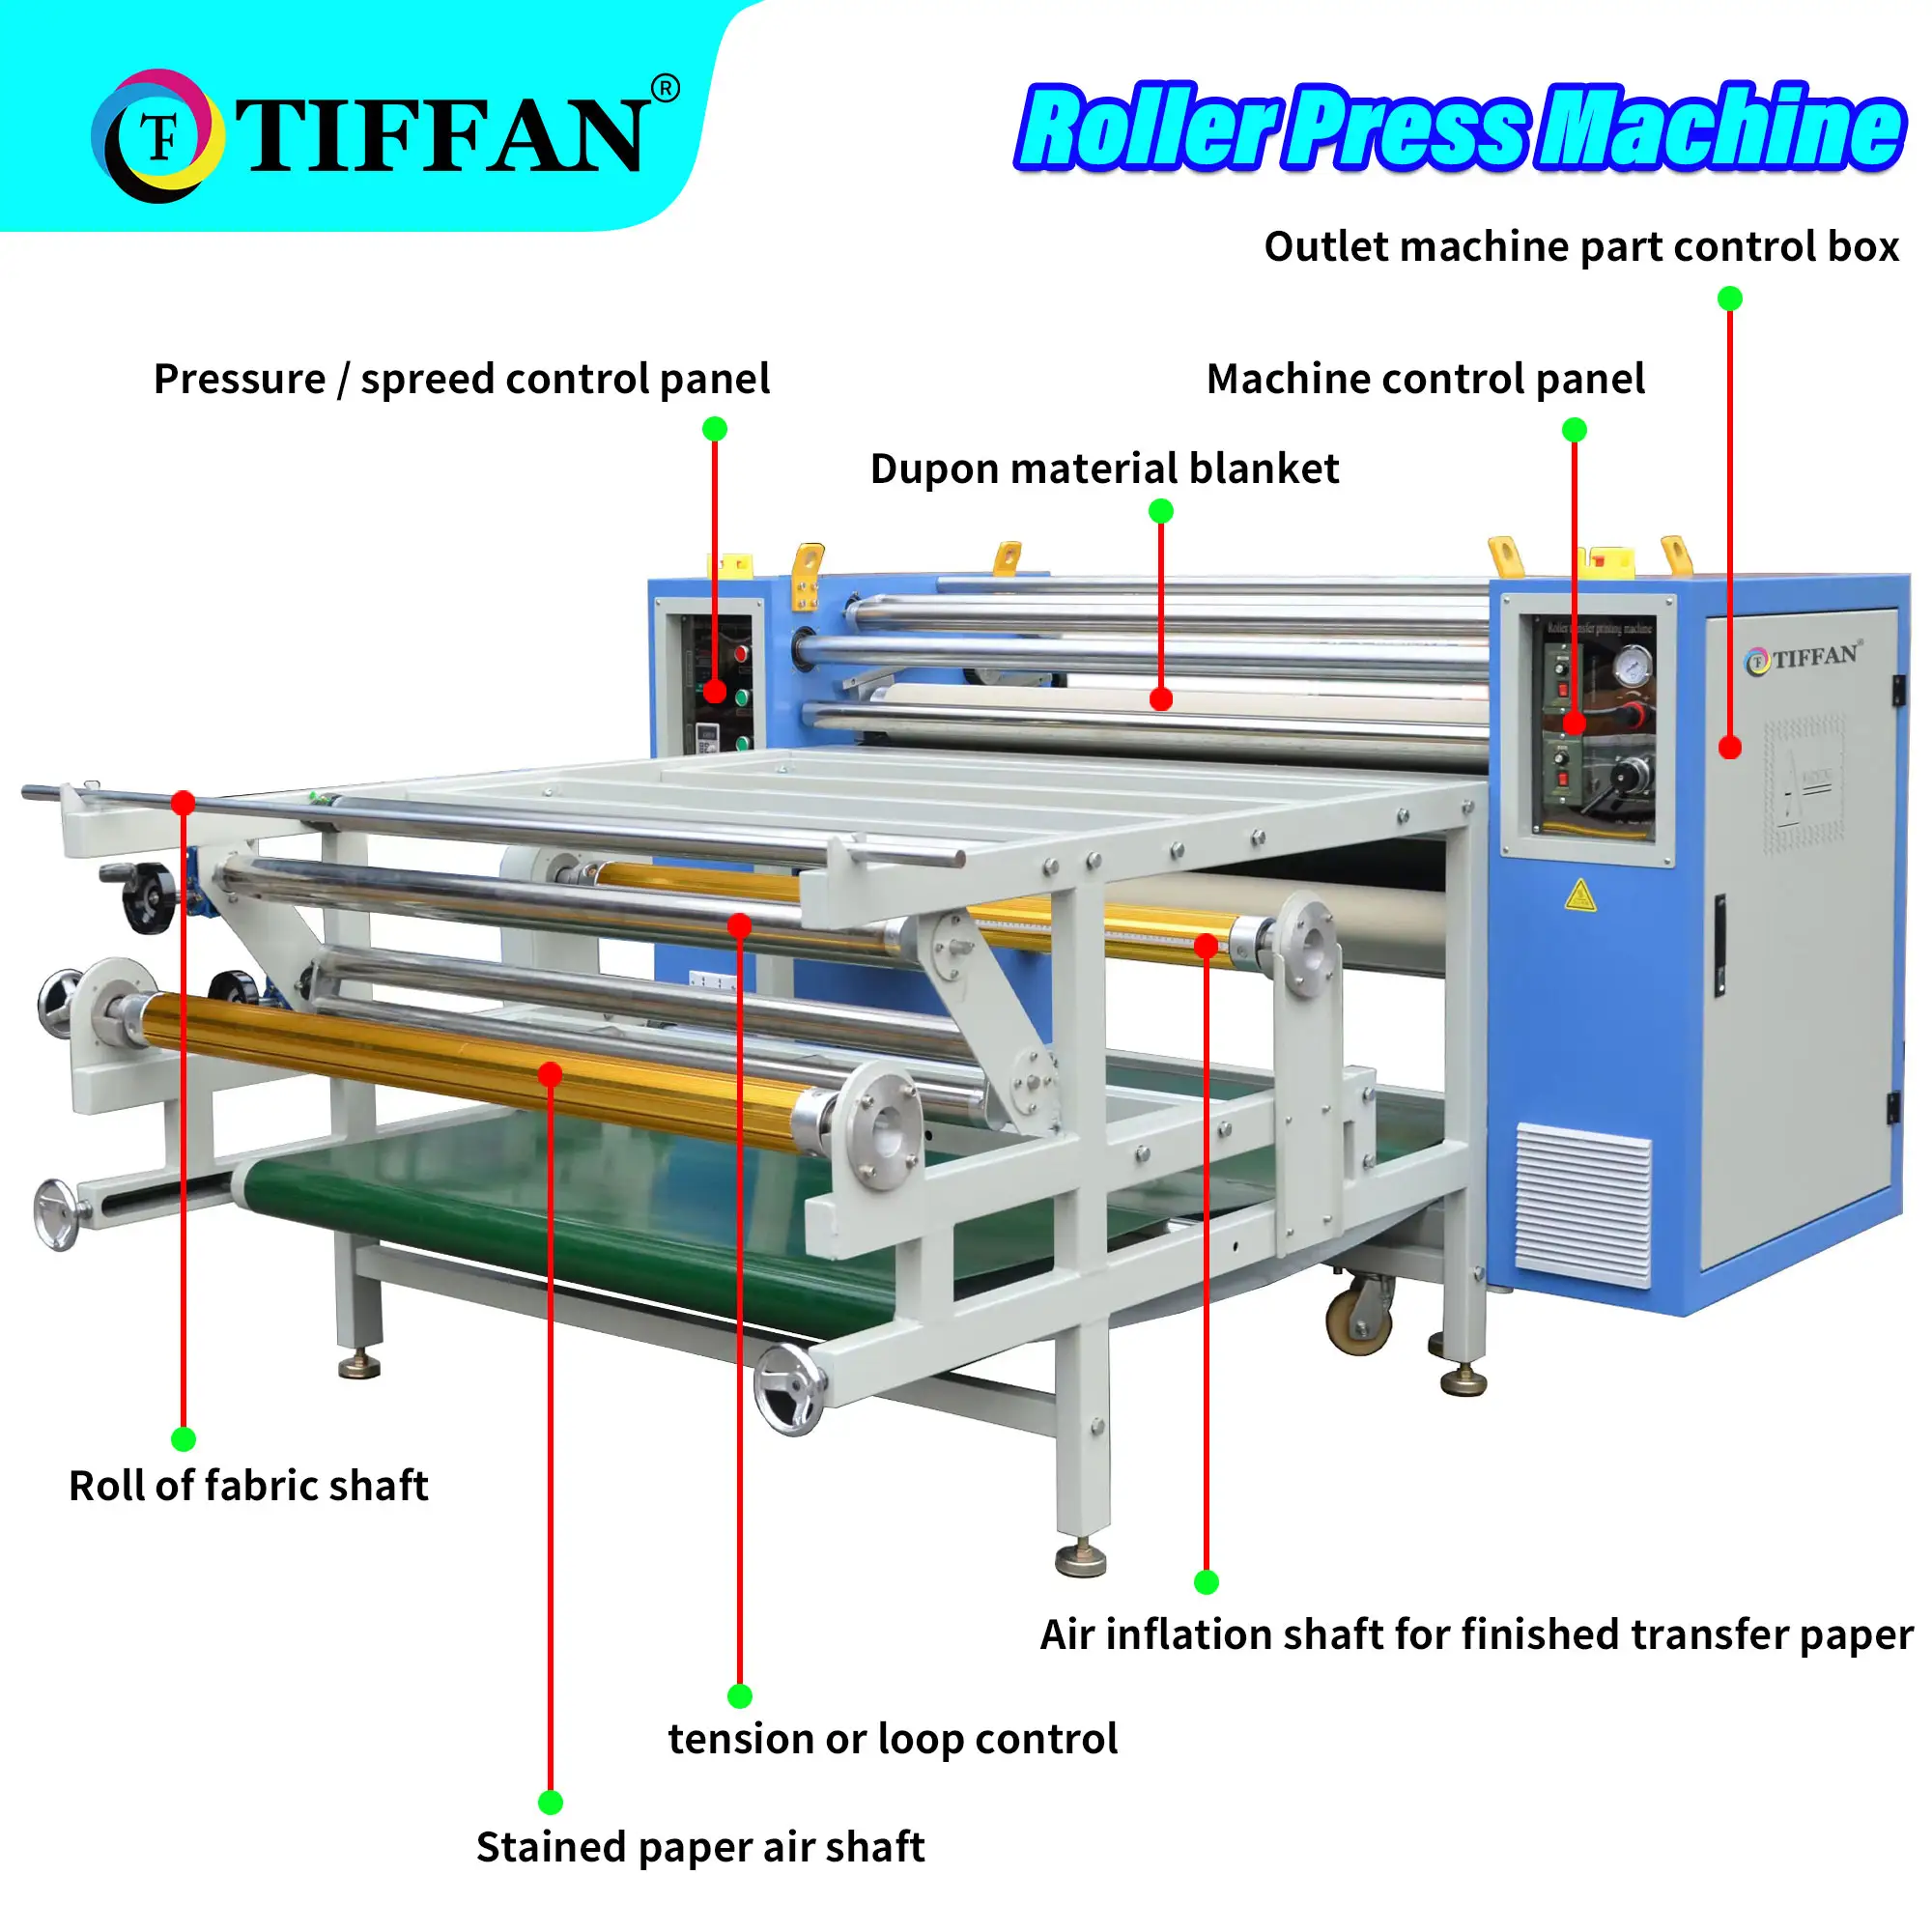 ماكينة طباعة التبخير التلقائية على اللفافات من TIFFAN، أفضل ماكينة ضغط حراري، ماكينة ضغط حراري على الأسطوانة بسعر رخيص